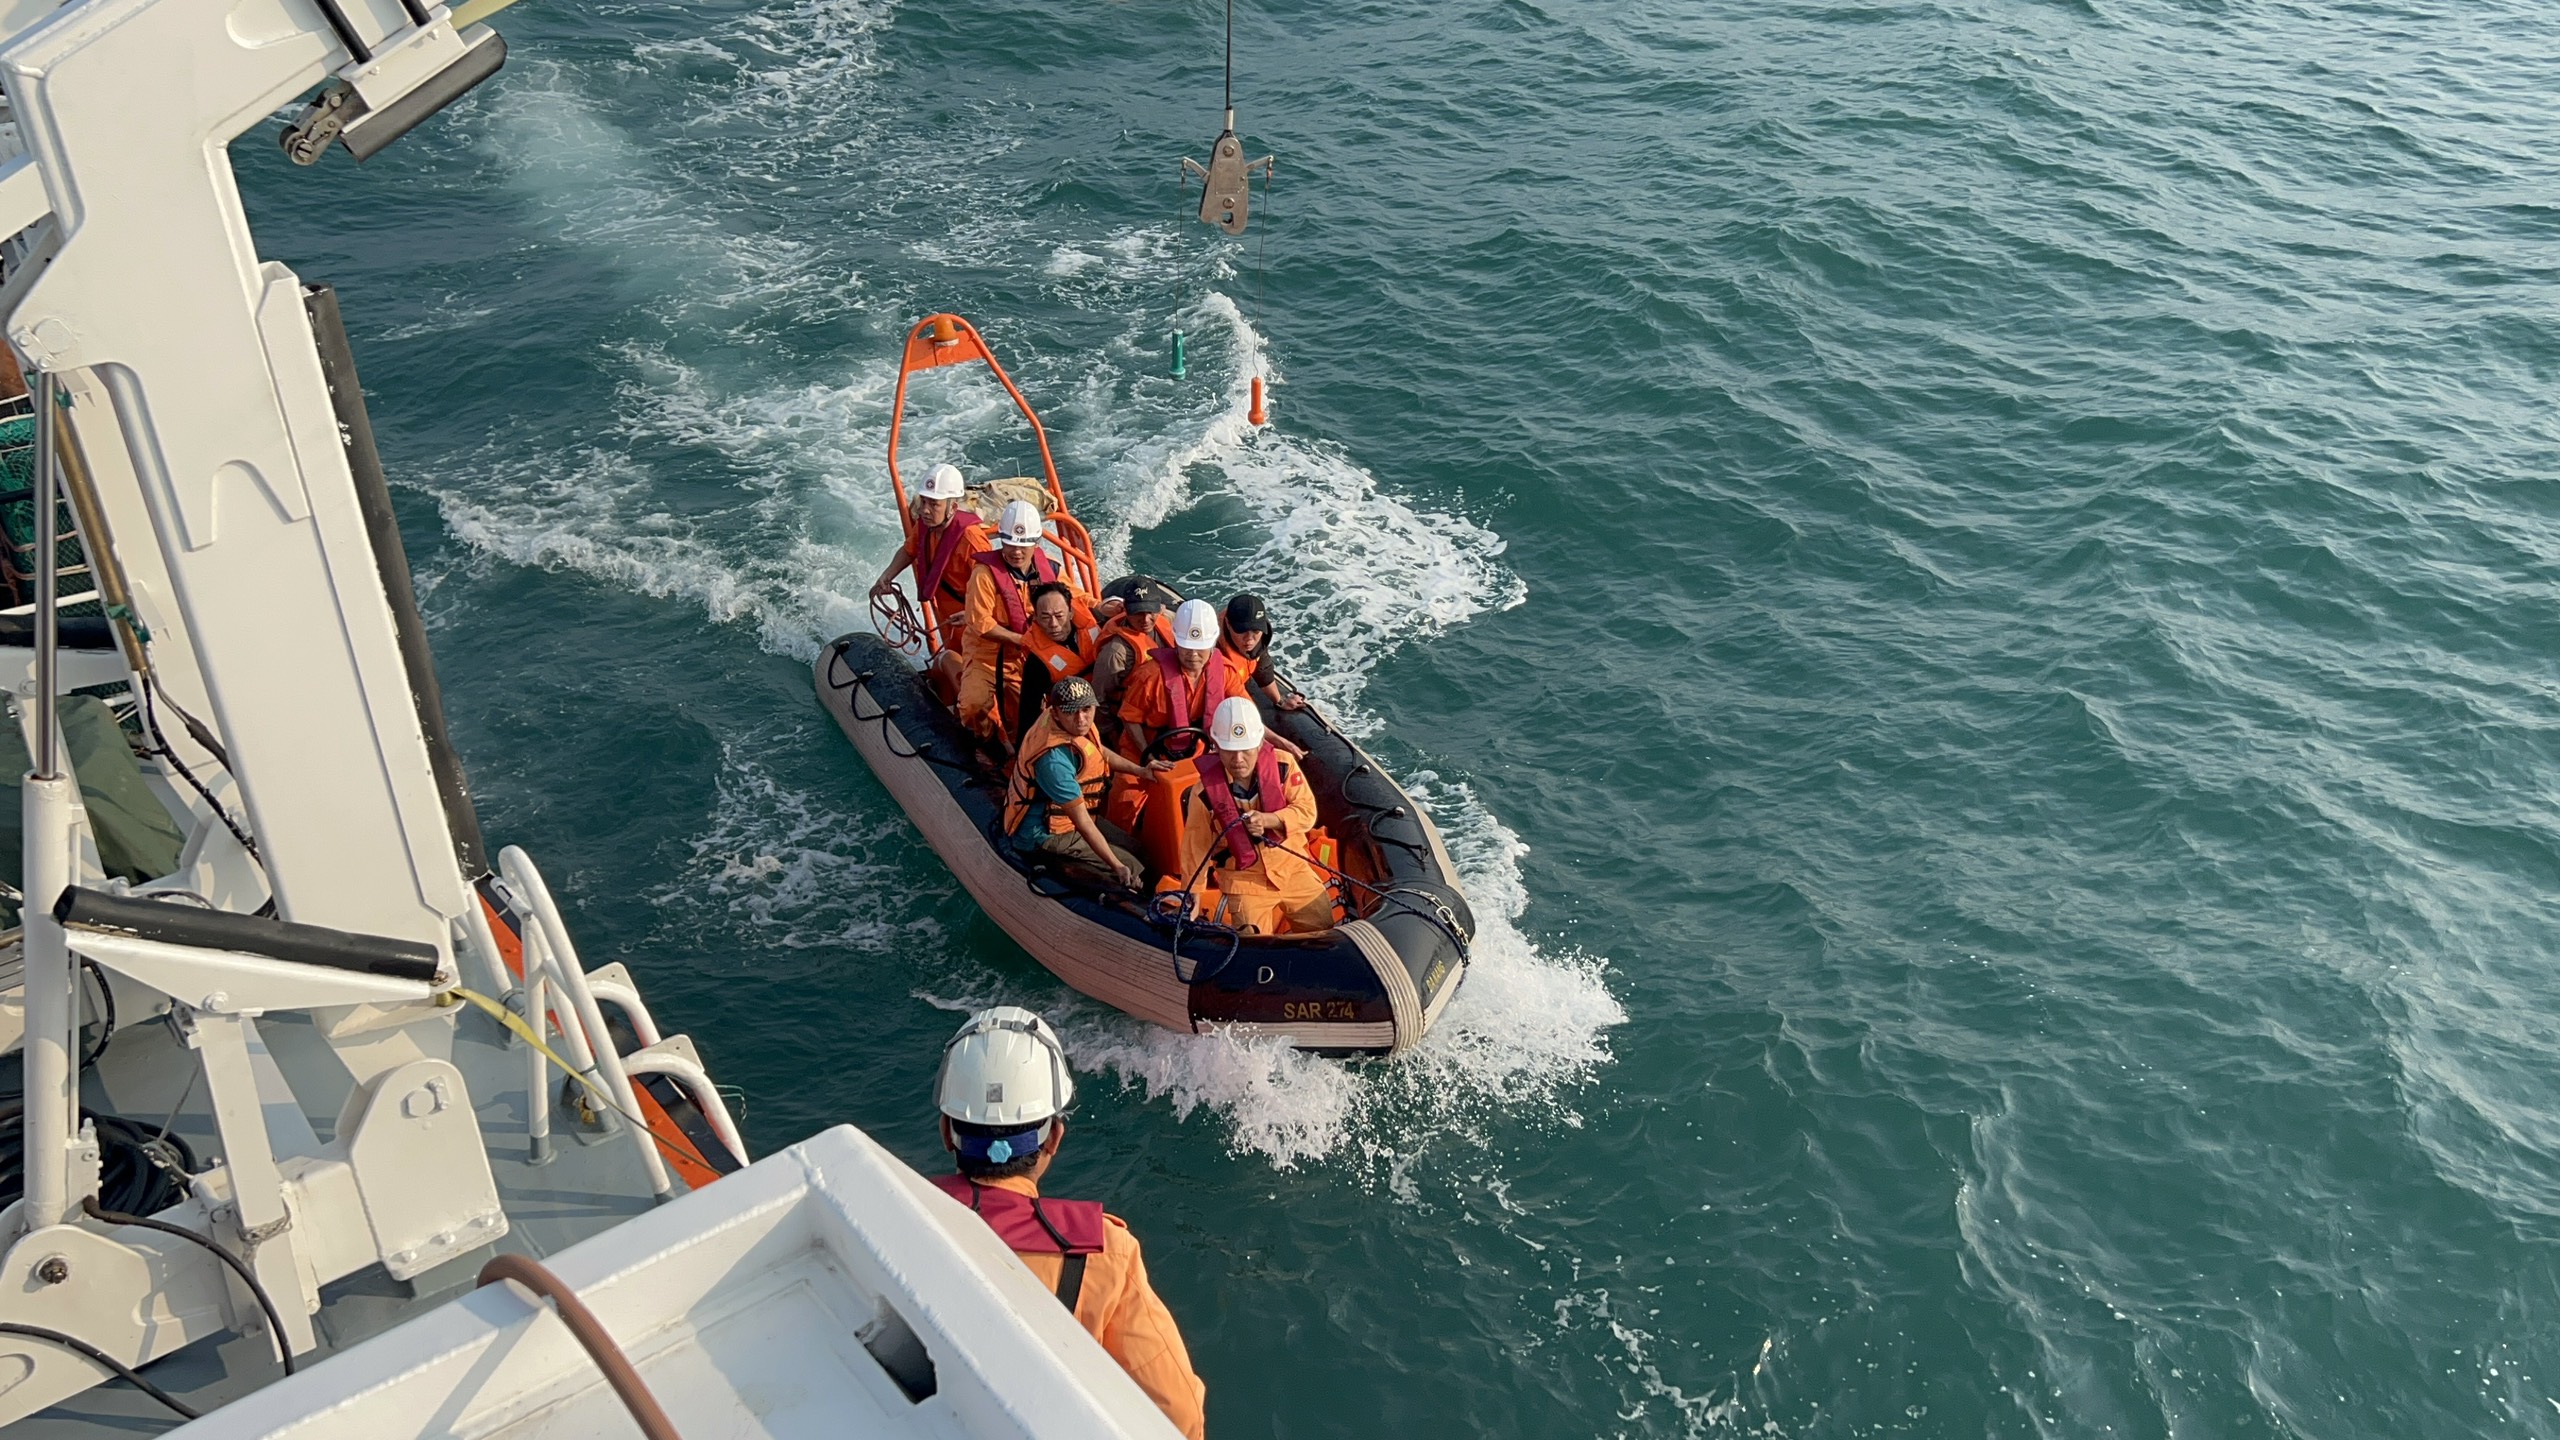 Hình ảnh hiện trường cứu 9 thuyền viên tàu Giang Anh 18 bị chìm do đâm vào bãi đá cạn- Ảnh 4.